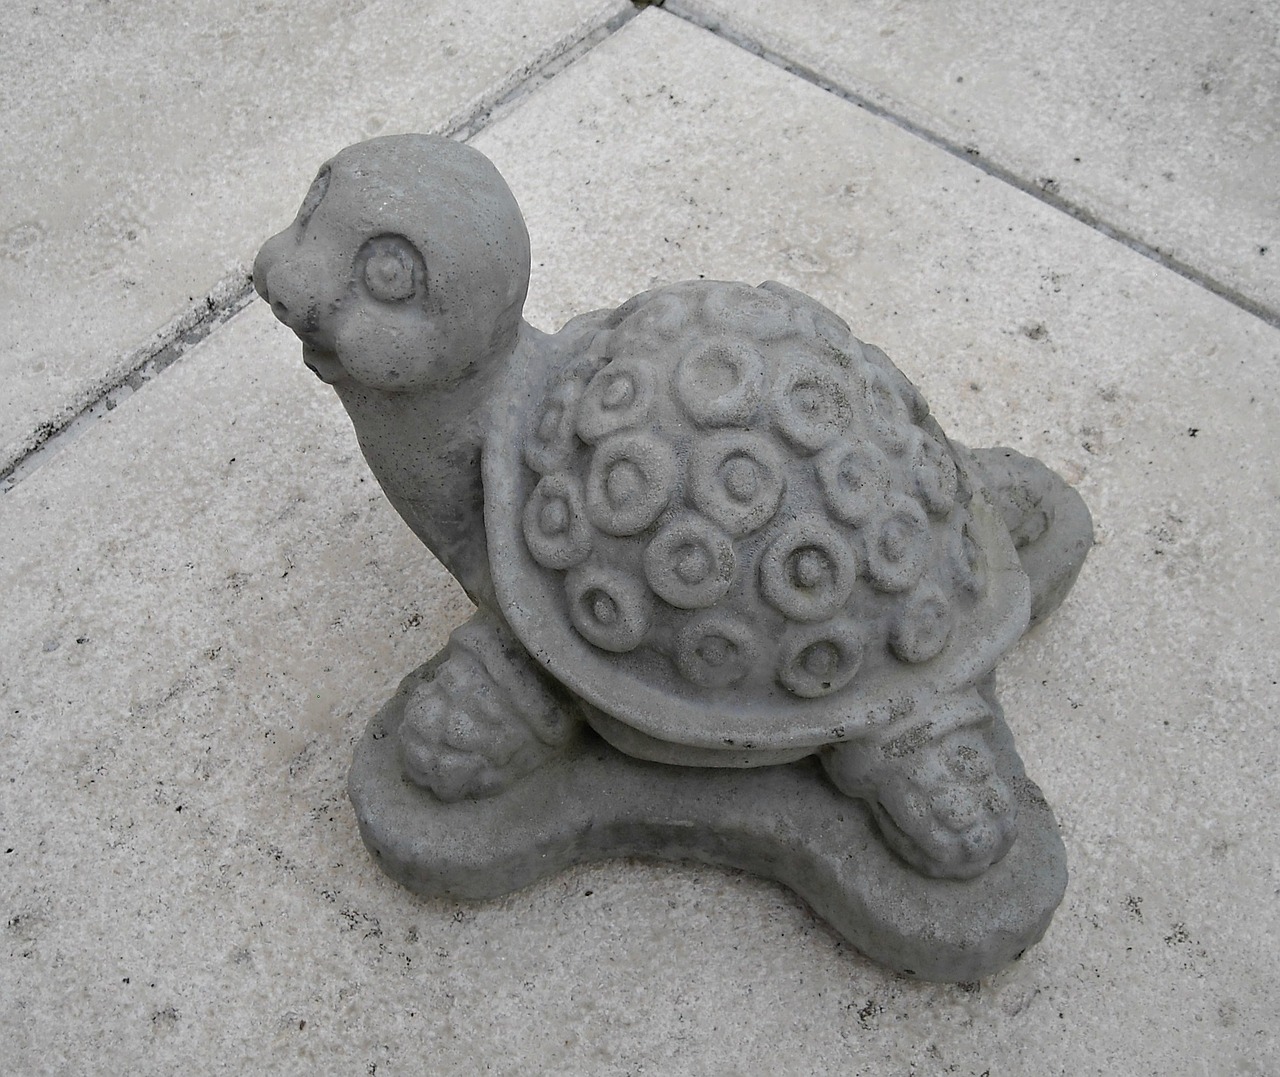 turtle figurine garden decoration free photo